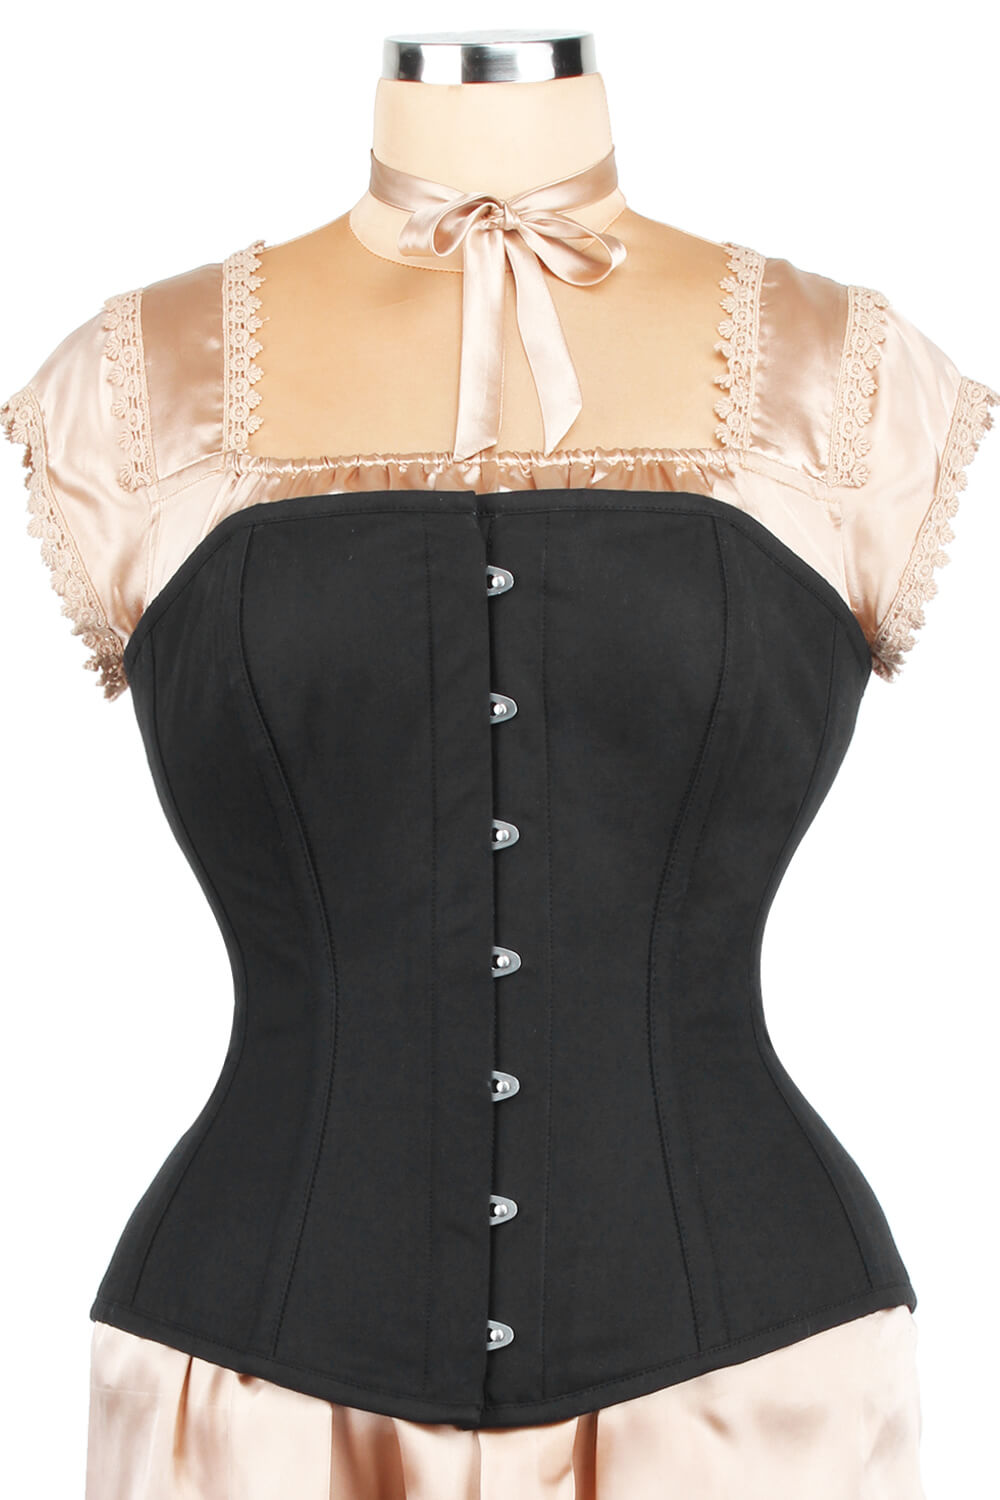 https://www.corsetdeal.com/cdn/shop/products/EL-119_F_Edwardian_Custom_Made_Long_Line_Cotton_Corset_ELC-401.jpg?v=1679056708